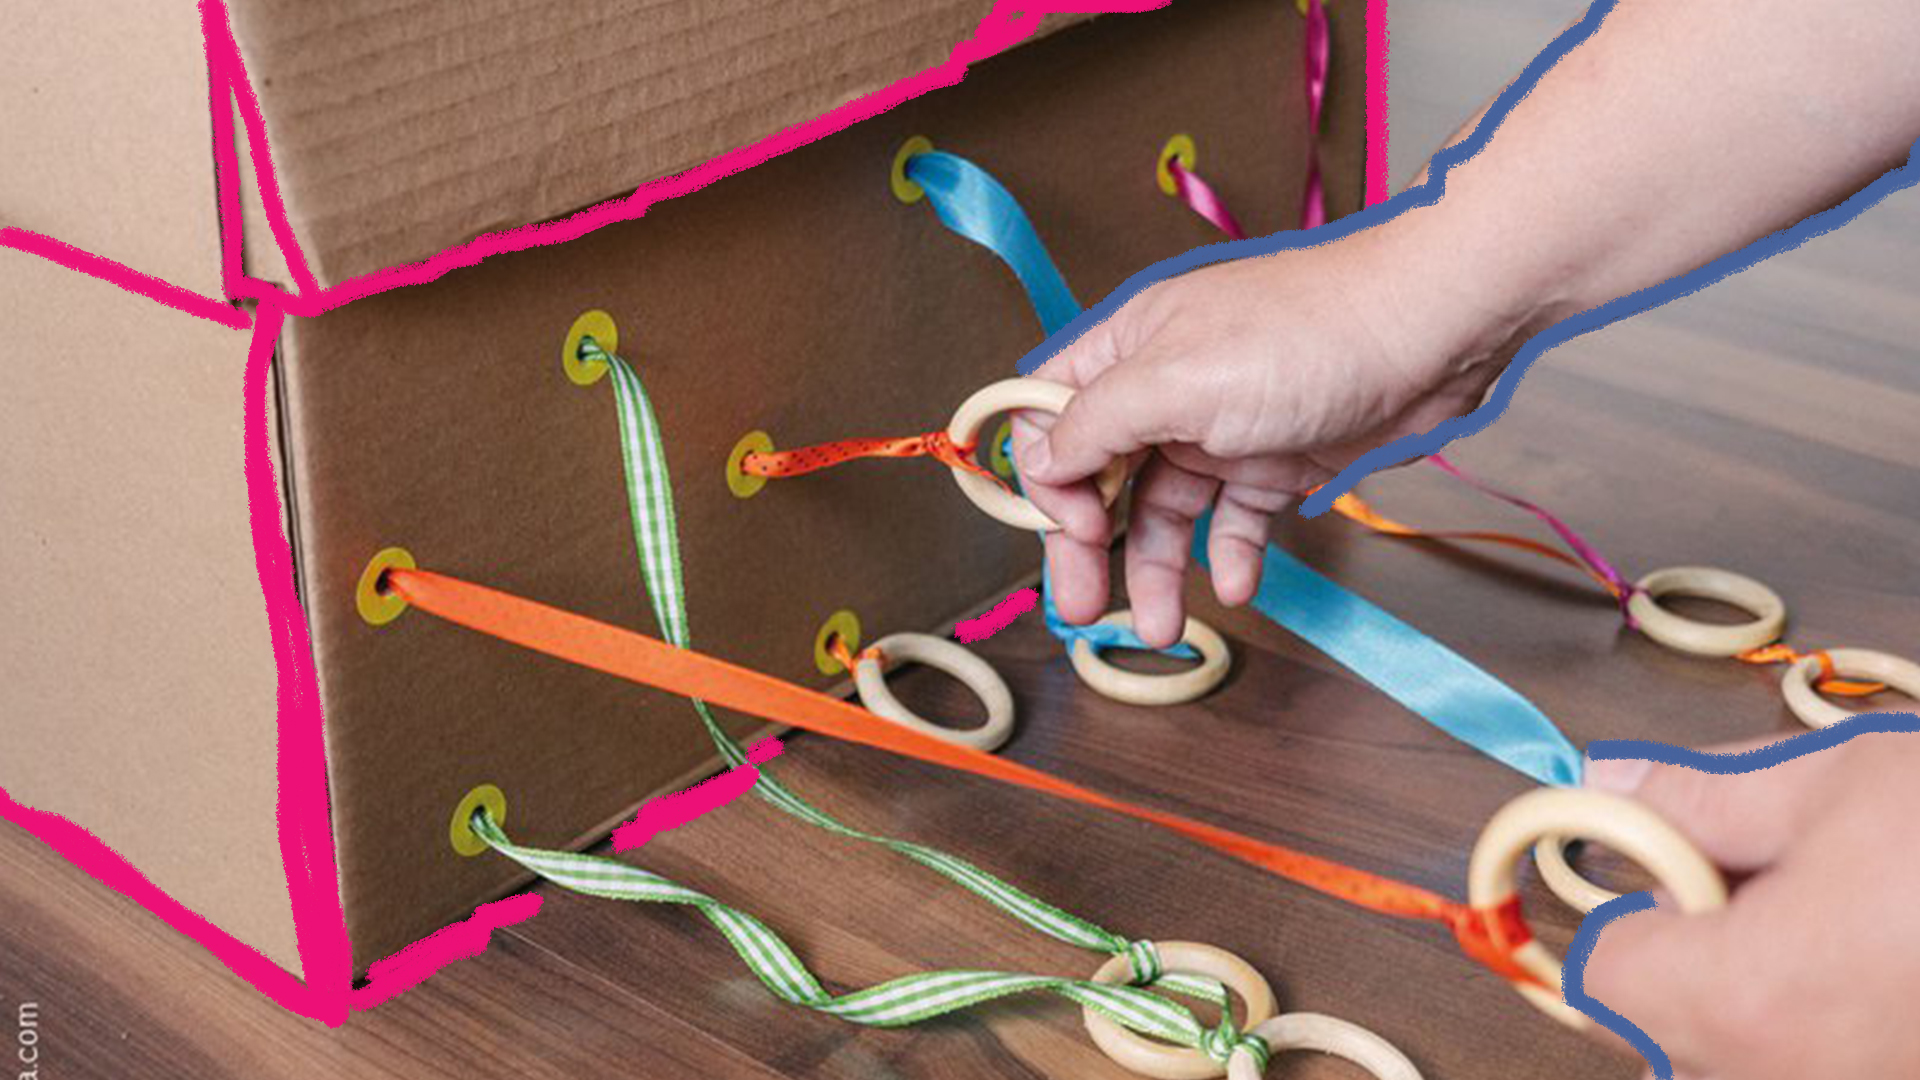 Caixas sensoriais: foto de mão de criança puxa fitas coloridas, que saem de uma caixa sensorial.